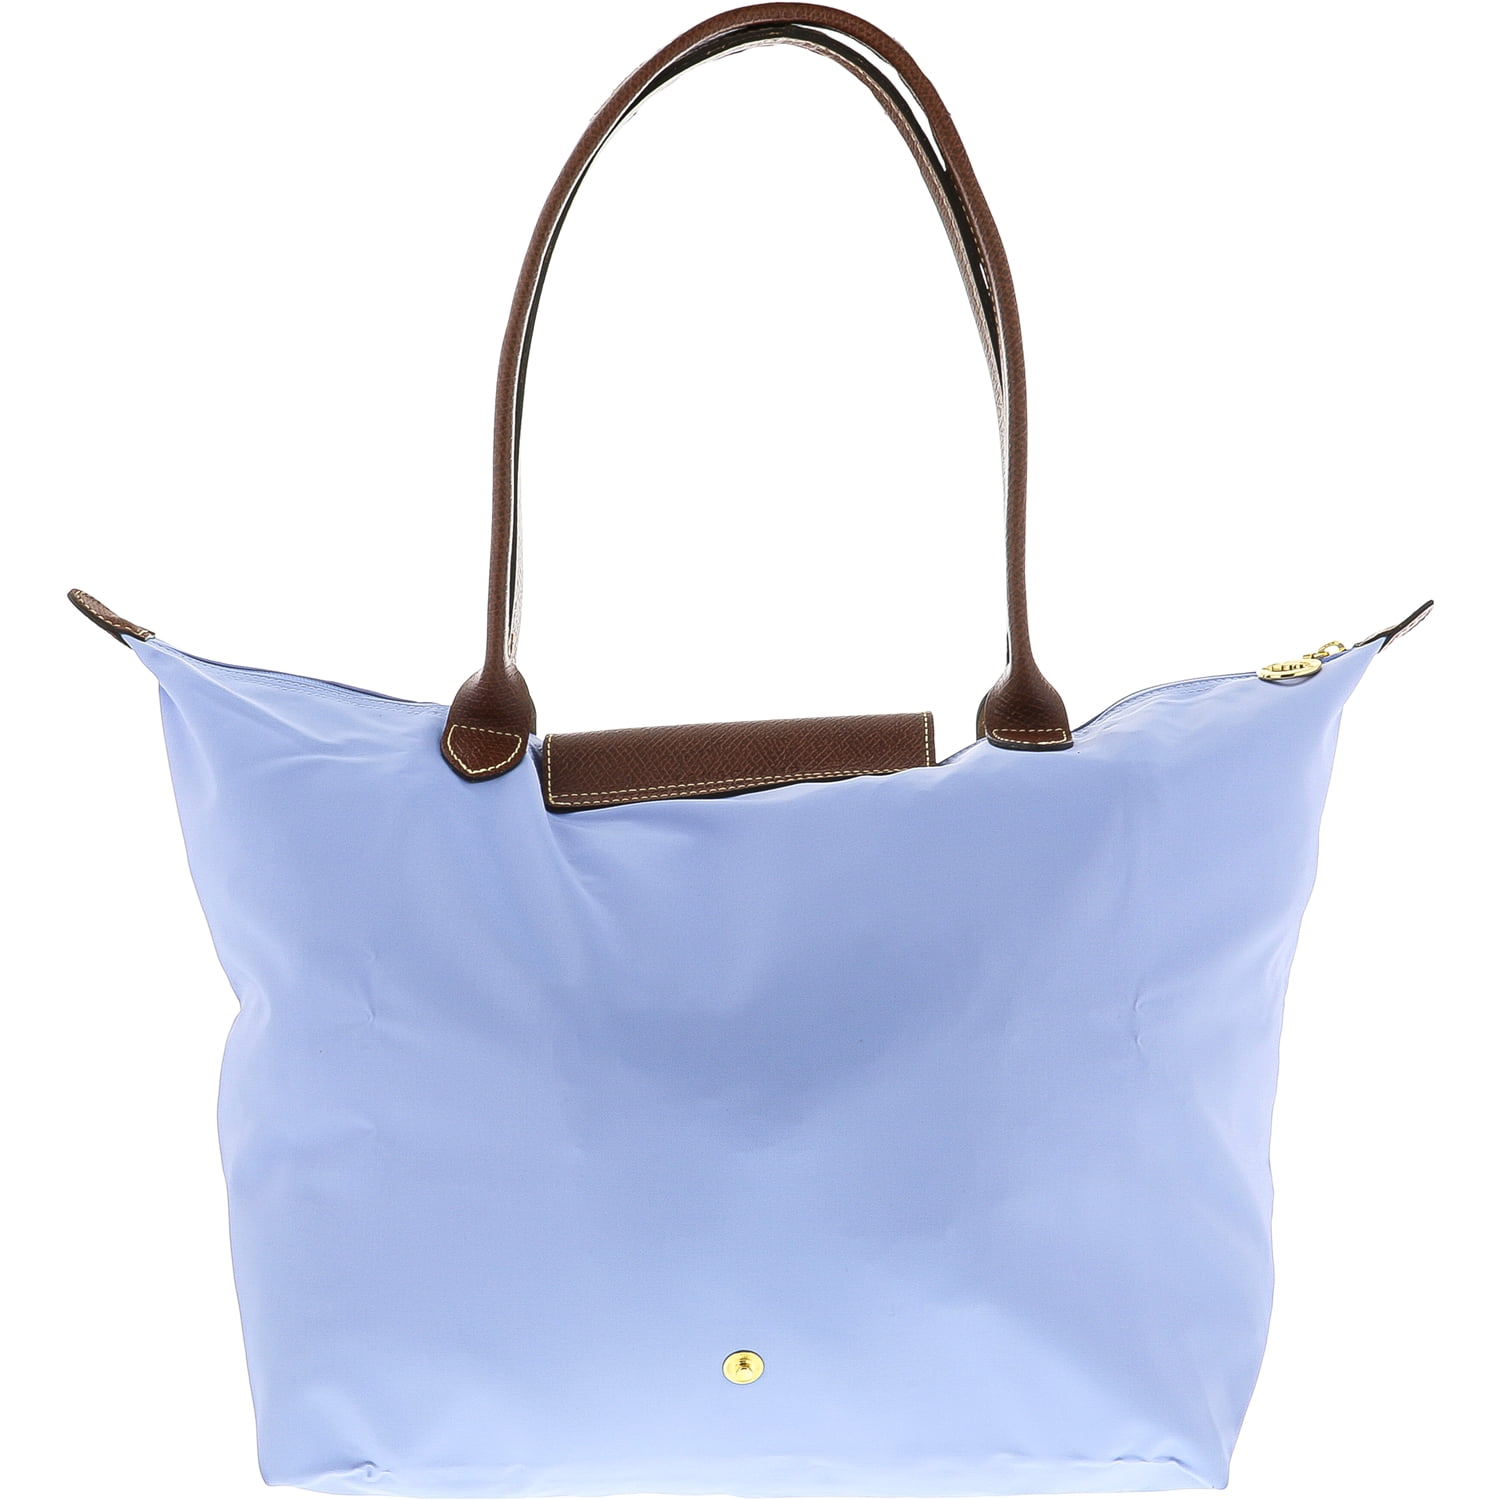 Longchamp Le Pliage Grand sac à main en nylon pour femme-Bleu brume - Achat  / Vente Longchamp Le Pliage Grand s - Cdiscount